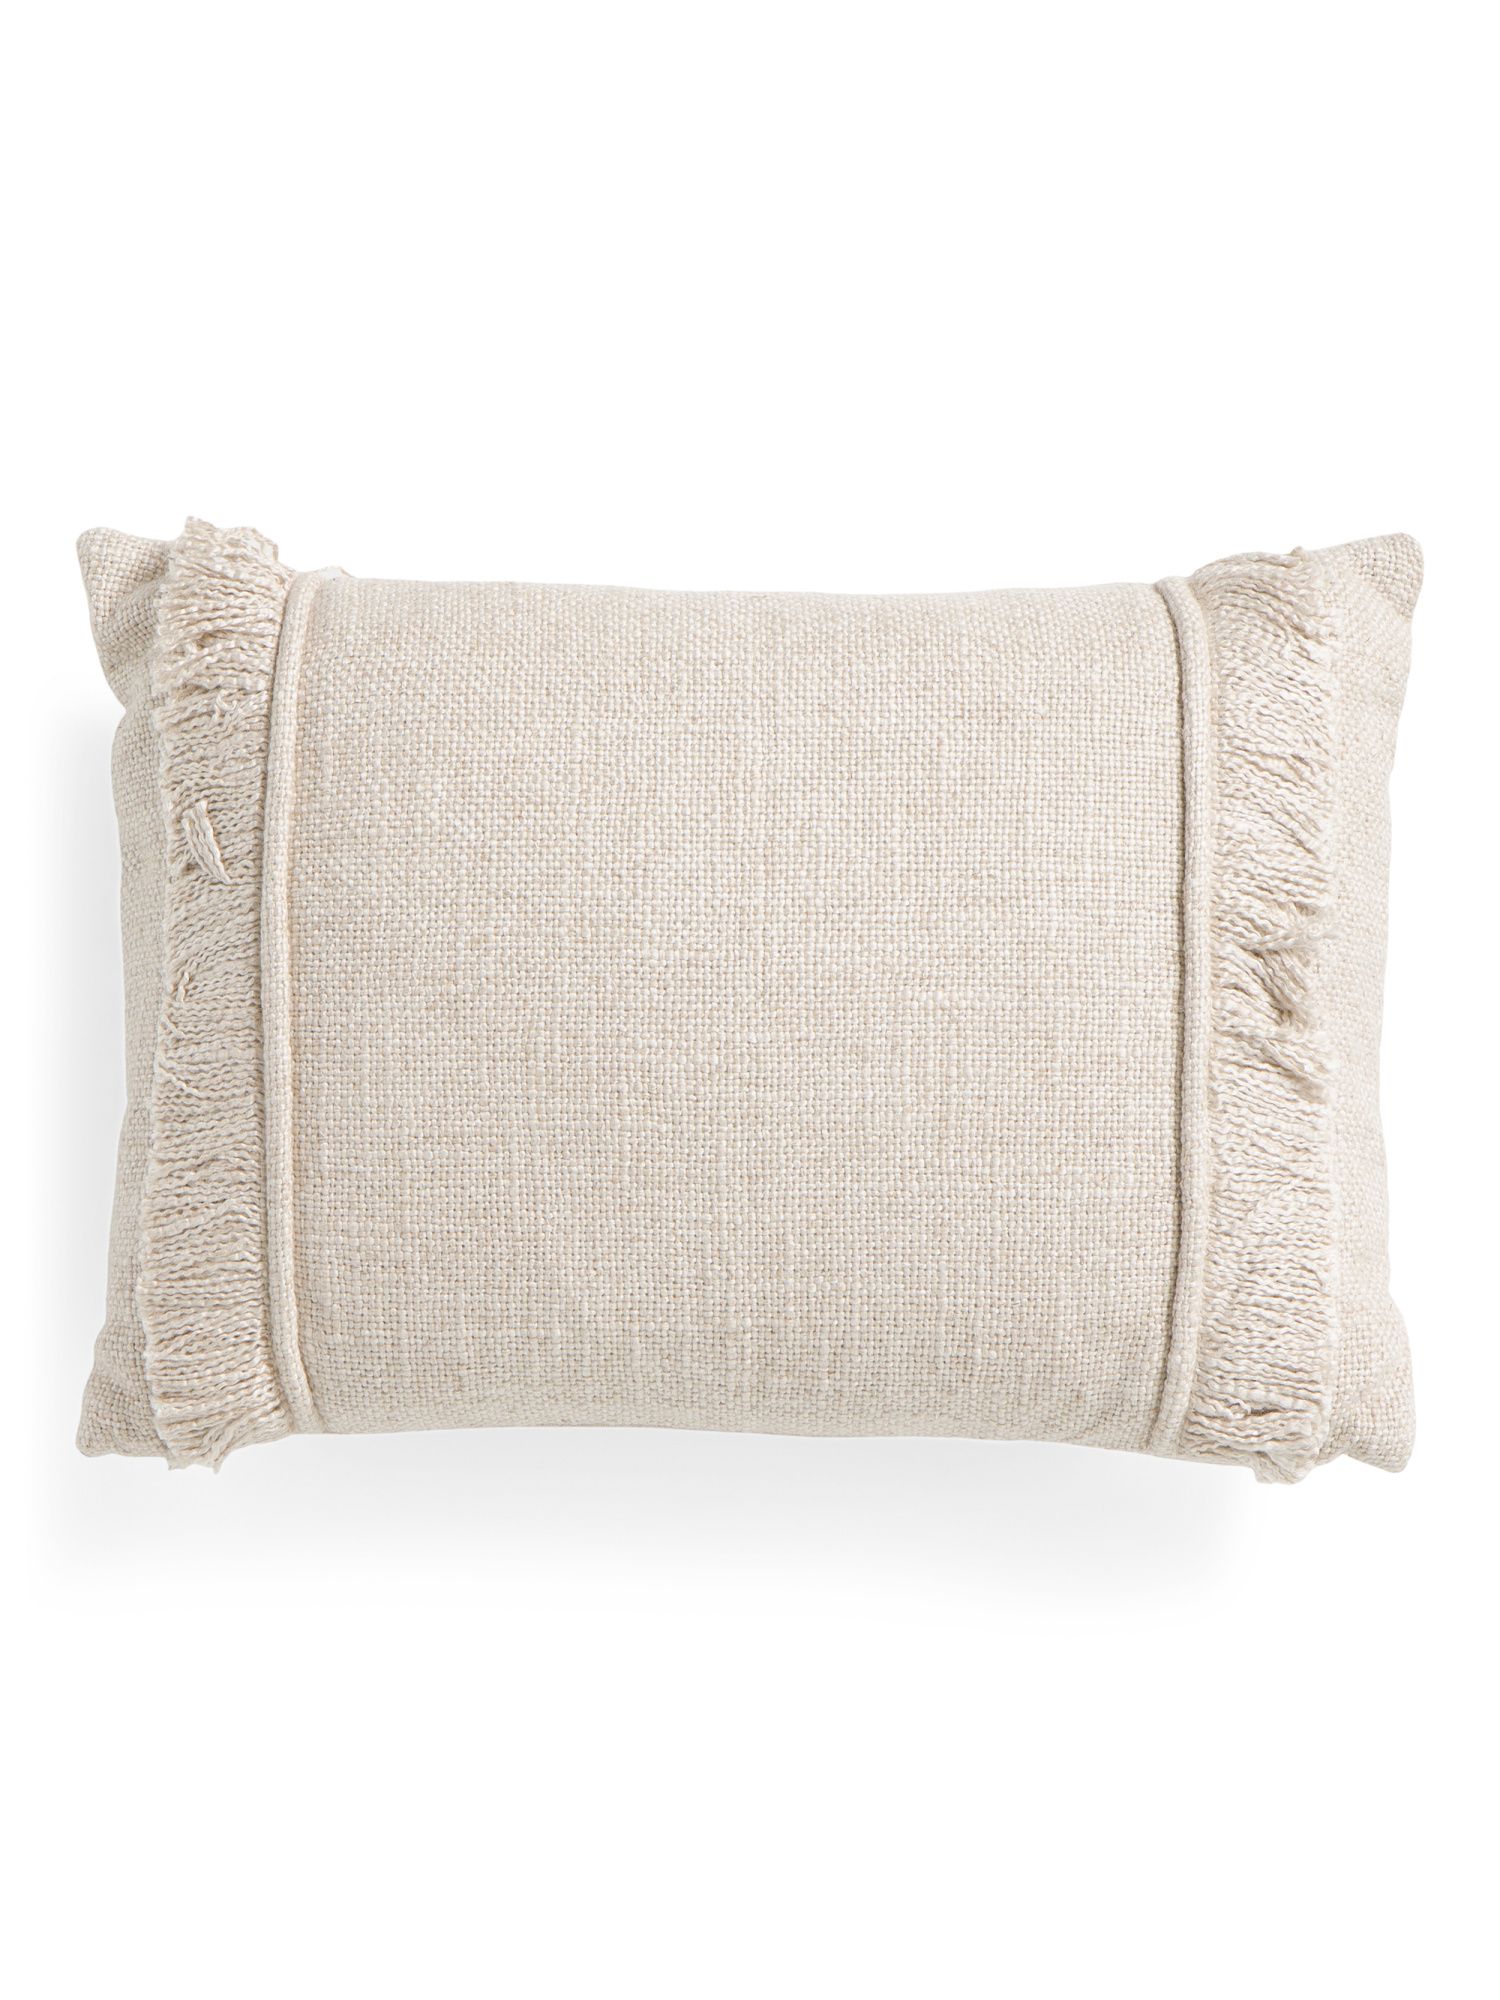 14x20 Linen Front Pillow | TJ Maxx